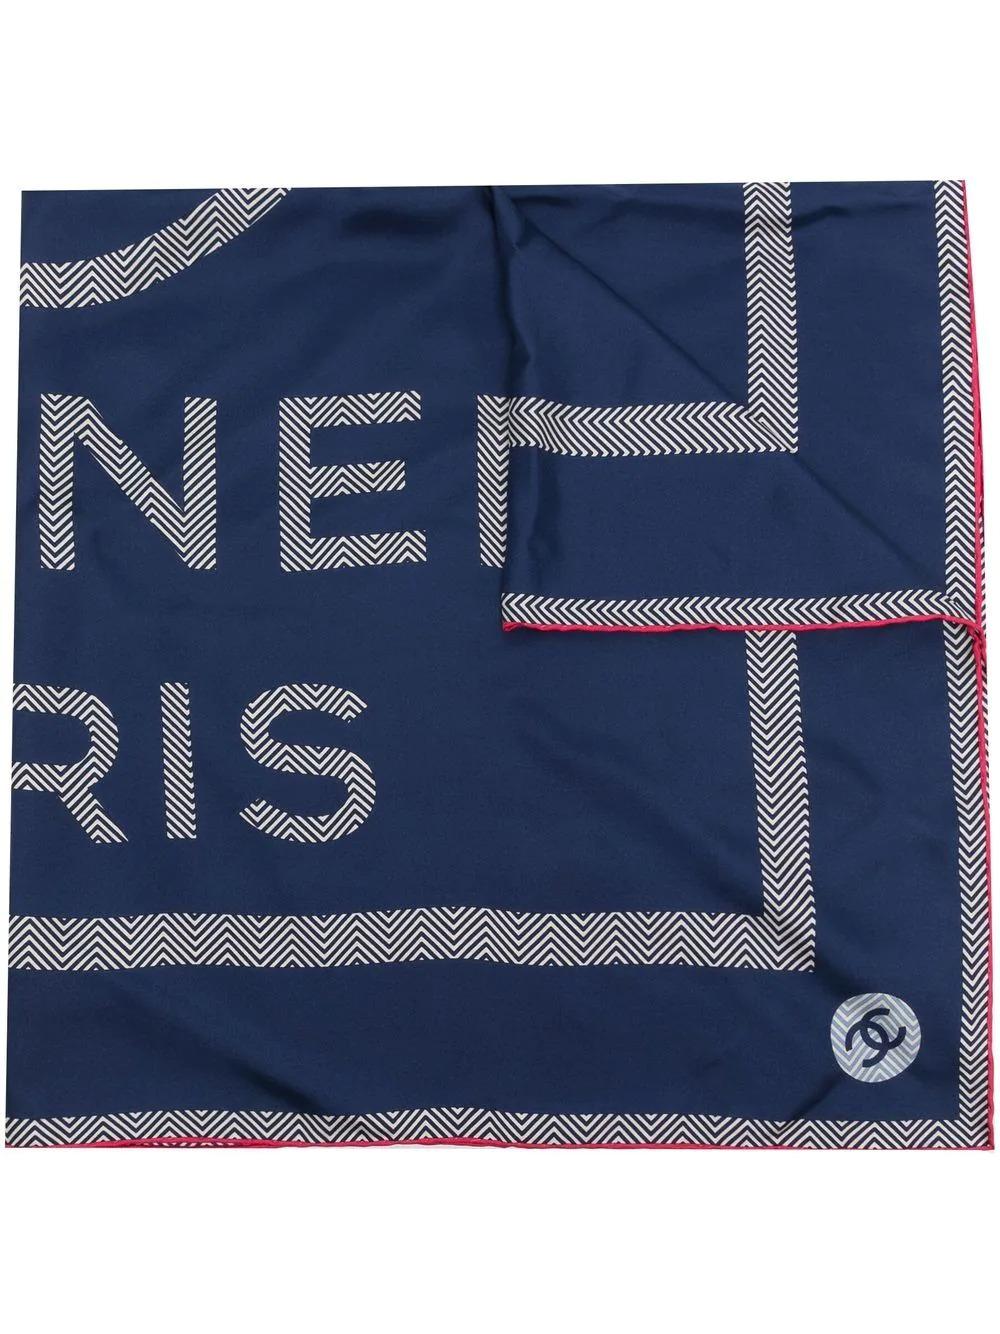 Dieser marineblaue Chanel Seidenschal aus Seide zeigt das charakteristische CC-Logo der Marke und ist mit einem fuchsiafarbenen Besatz versehen. Binden Sie es um Ihren Hals oder die Griffe einer Tasche.

Farbe: